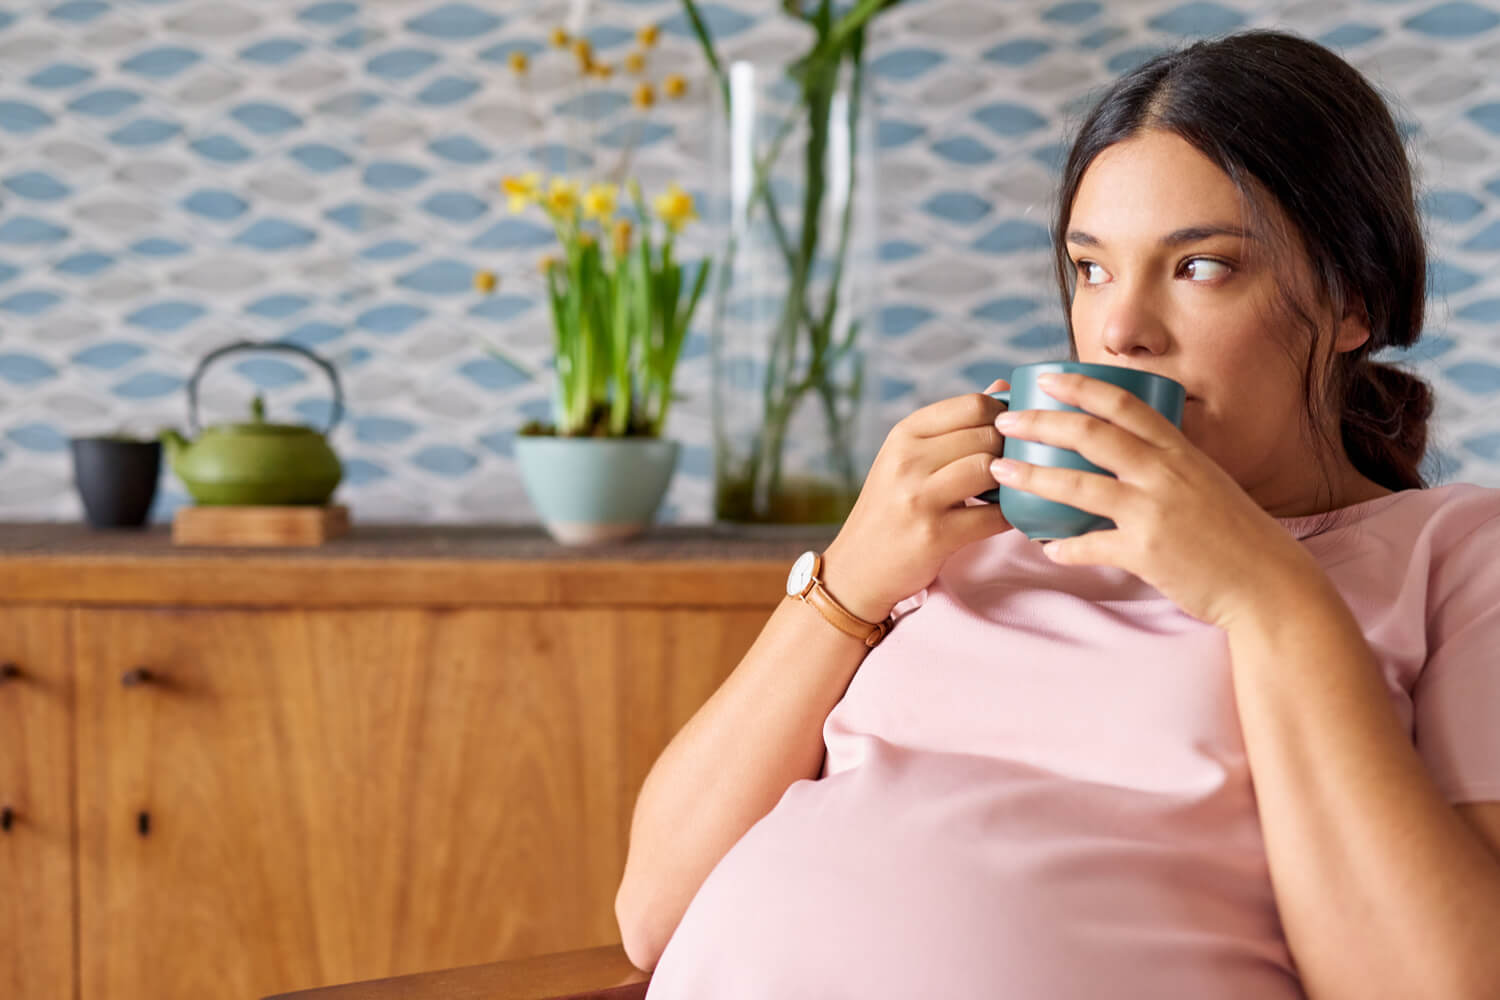 Is fennel tea safe during pregnancy